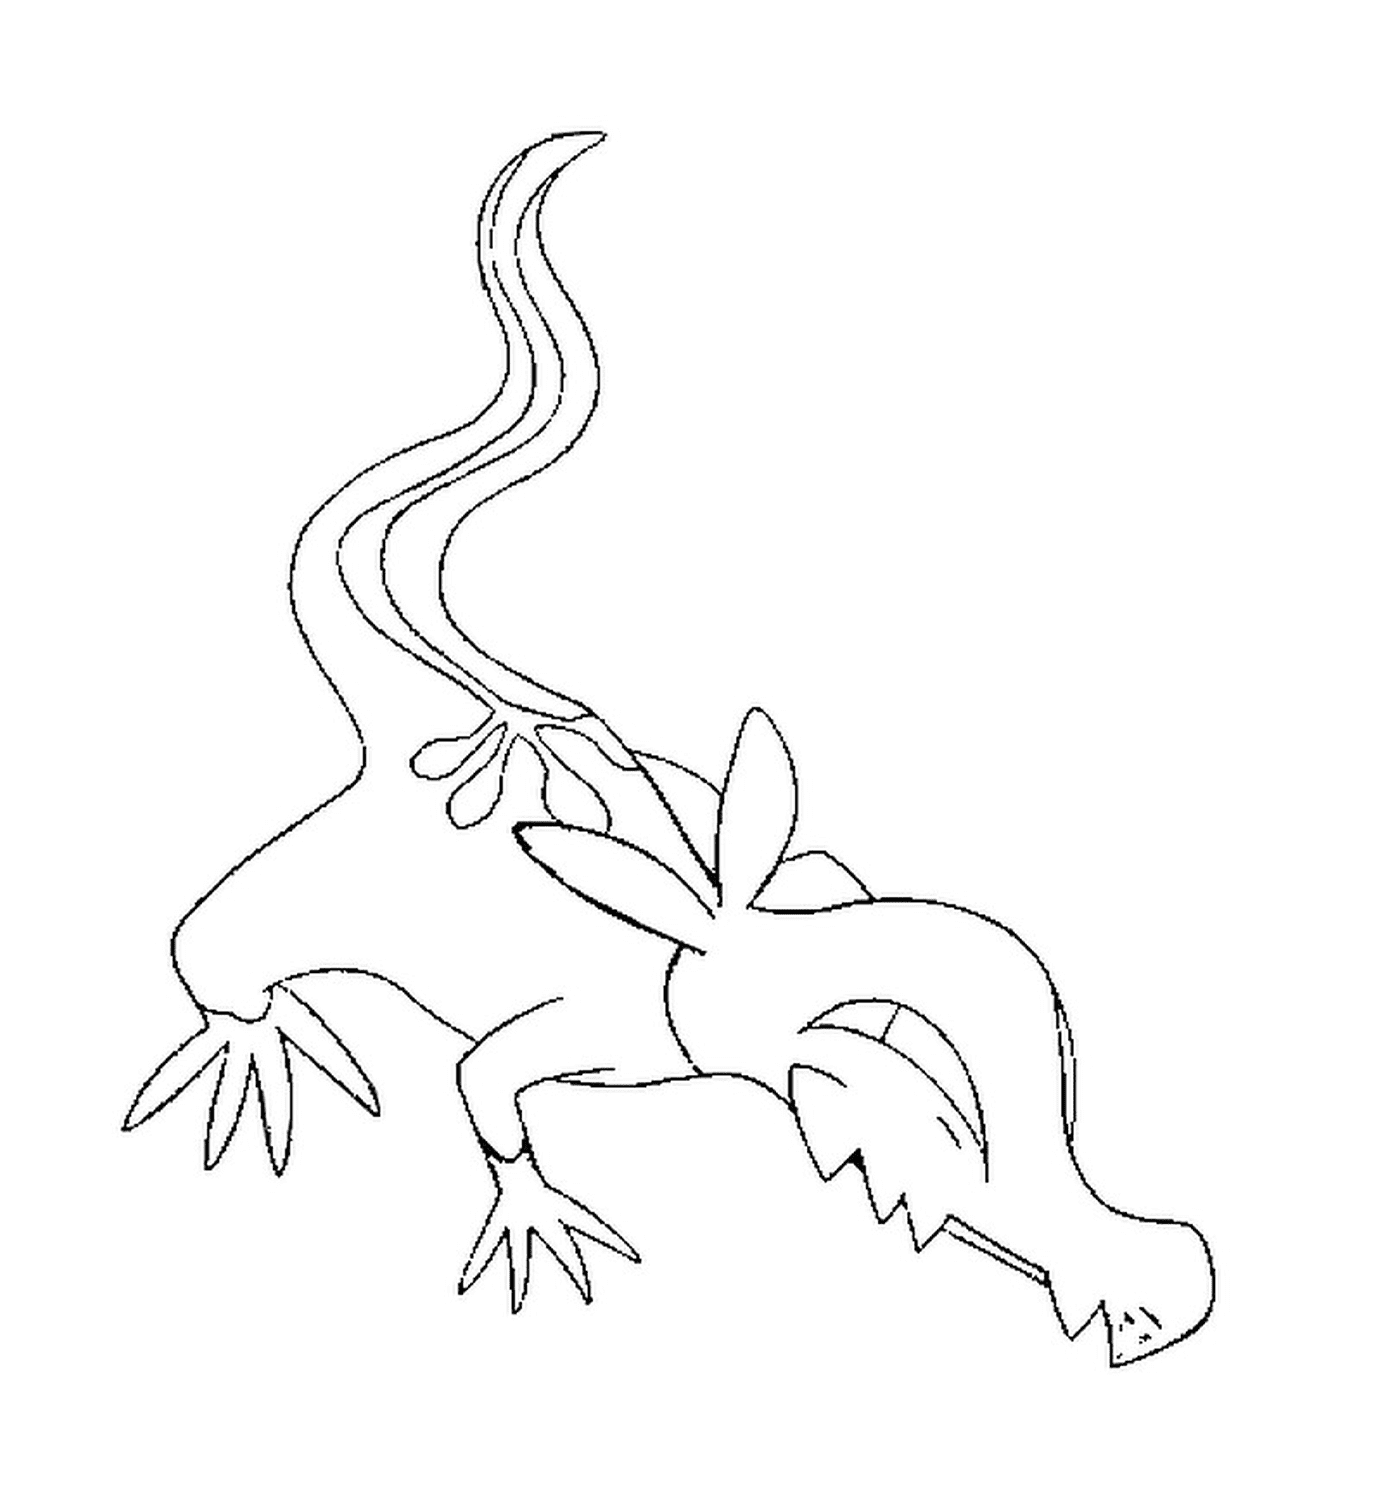  Тритокс, ящерица с длинными ногами 